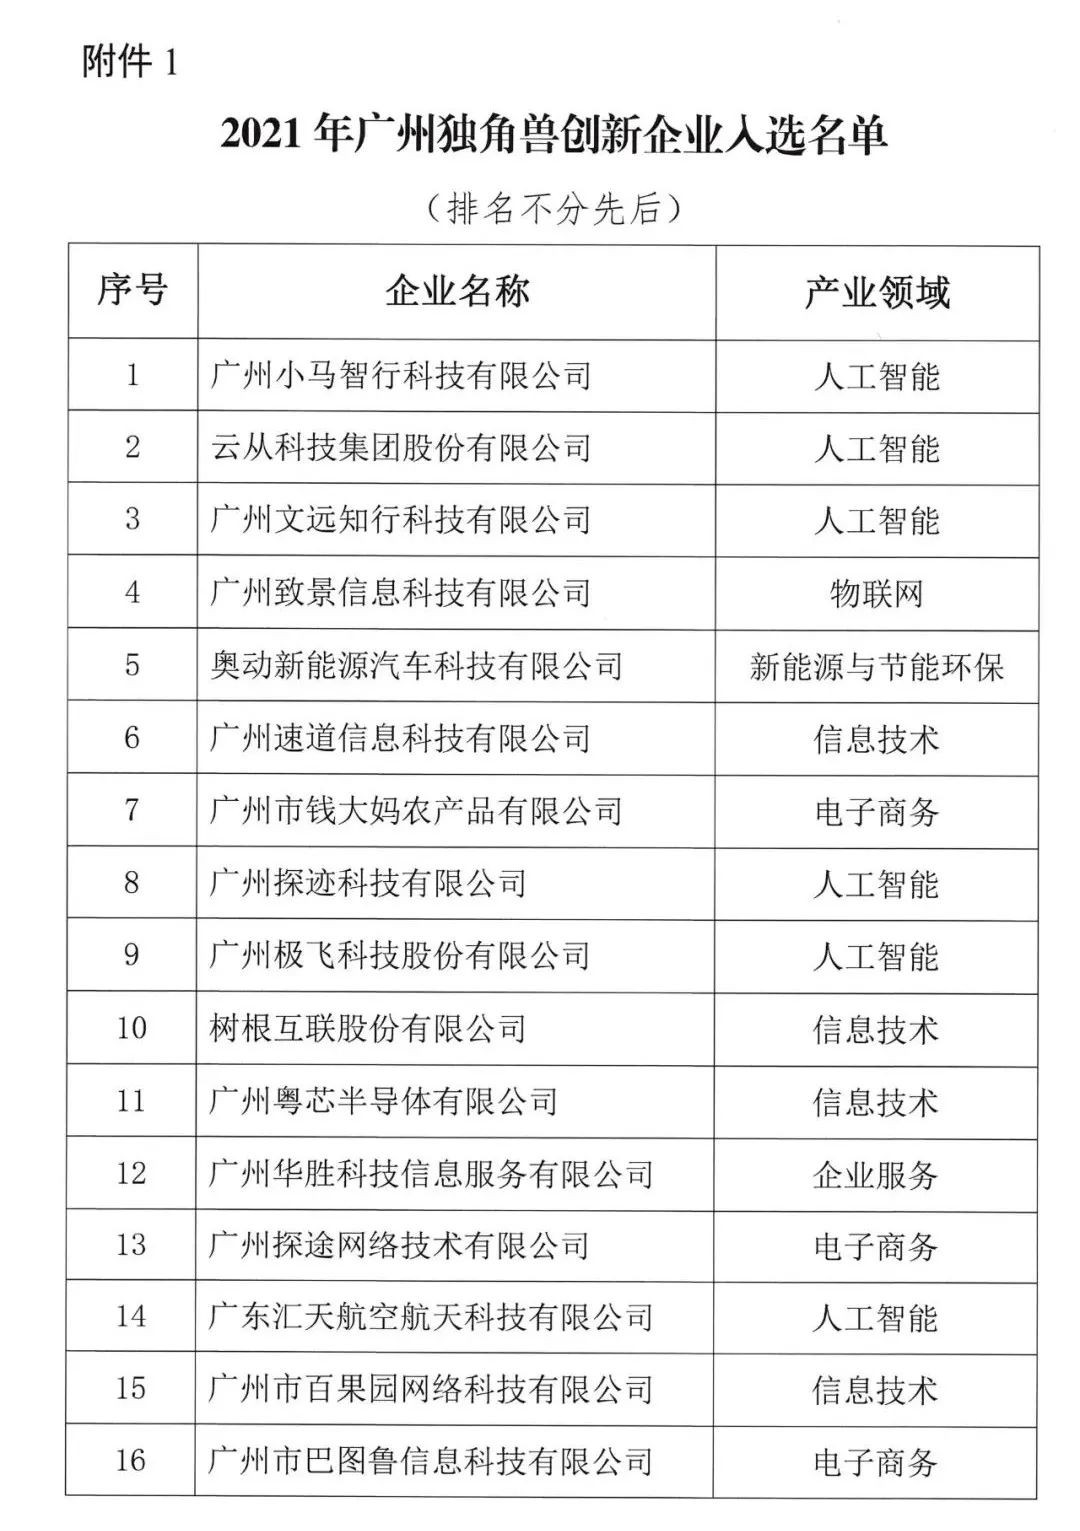 2021广州“独角兽”创新企业榜单出炉 云从科技助力大湾区开启智慧建设